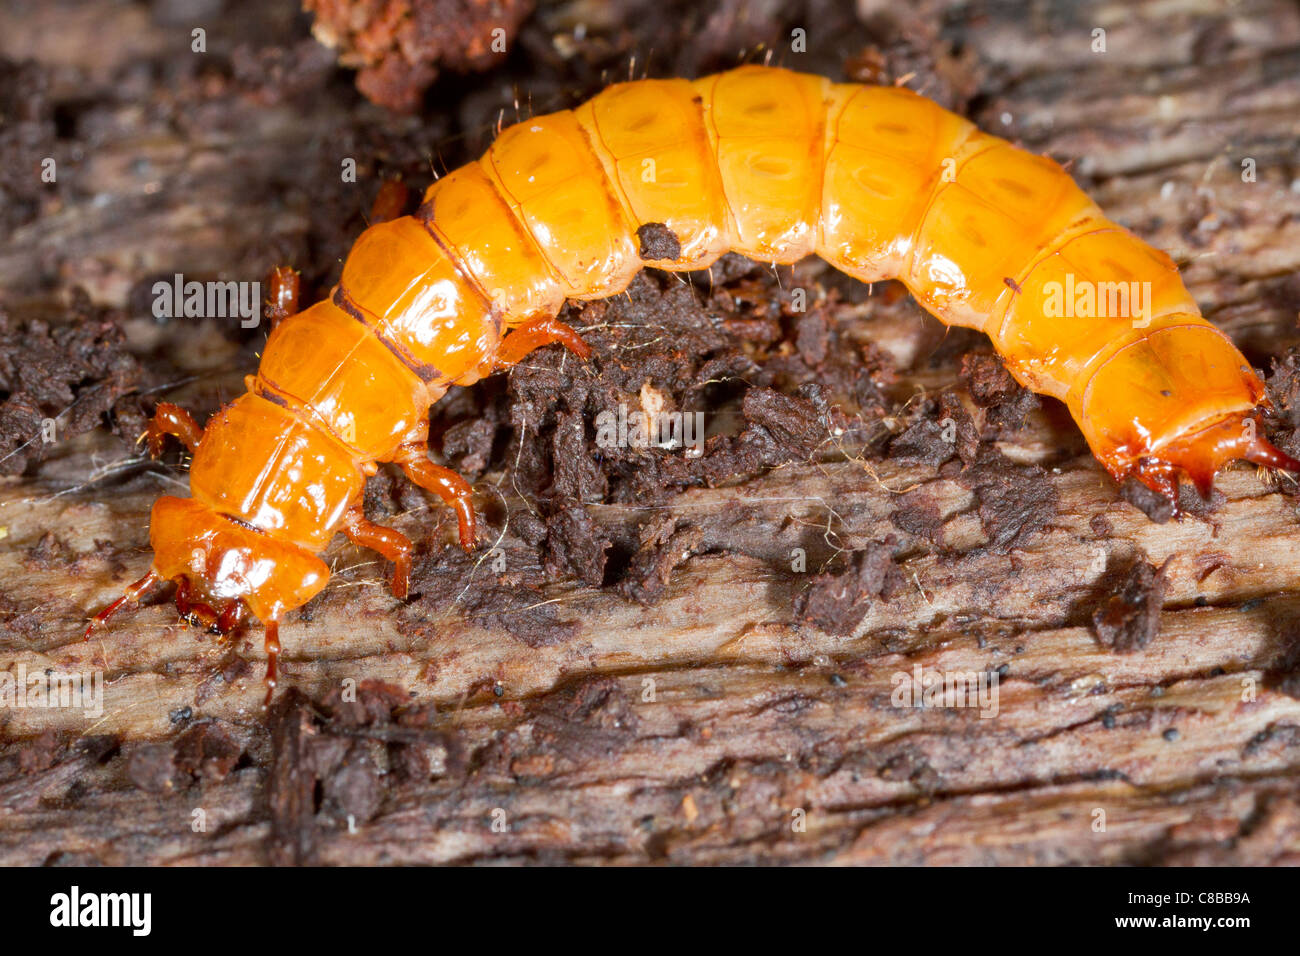 larva of Cucujus cinnaberinus in nature Stock Photo